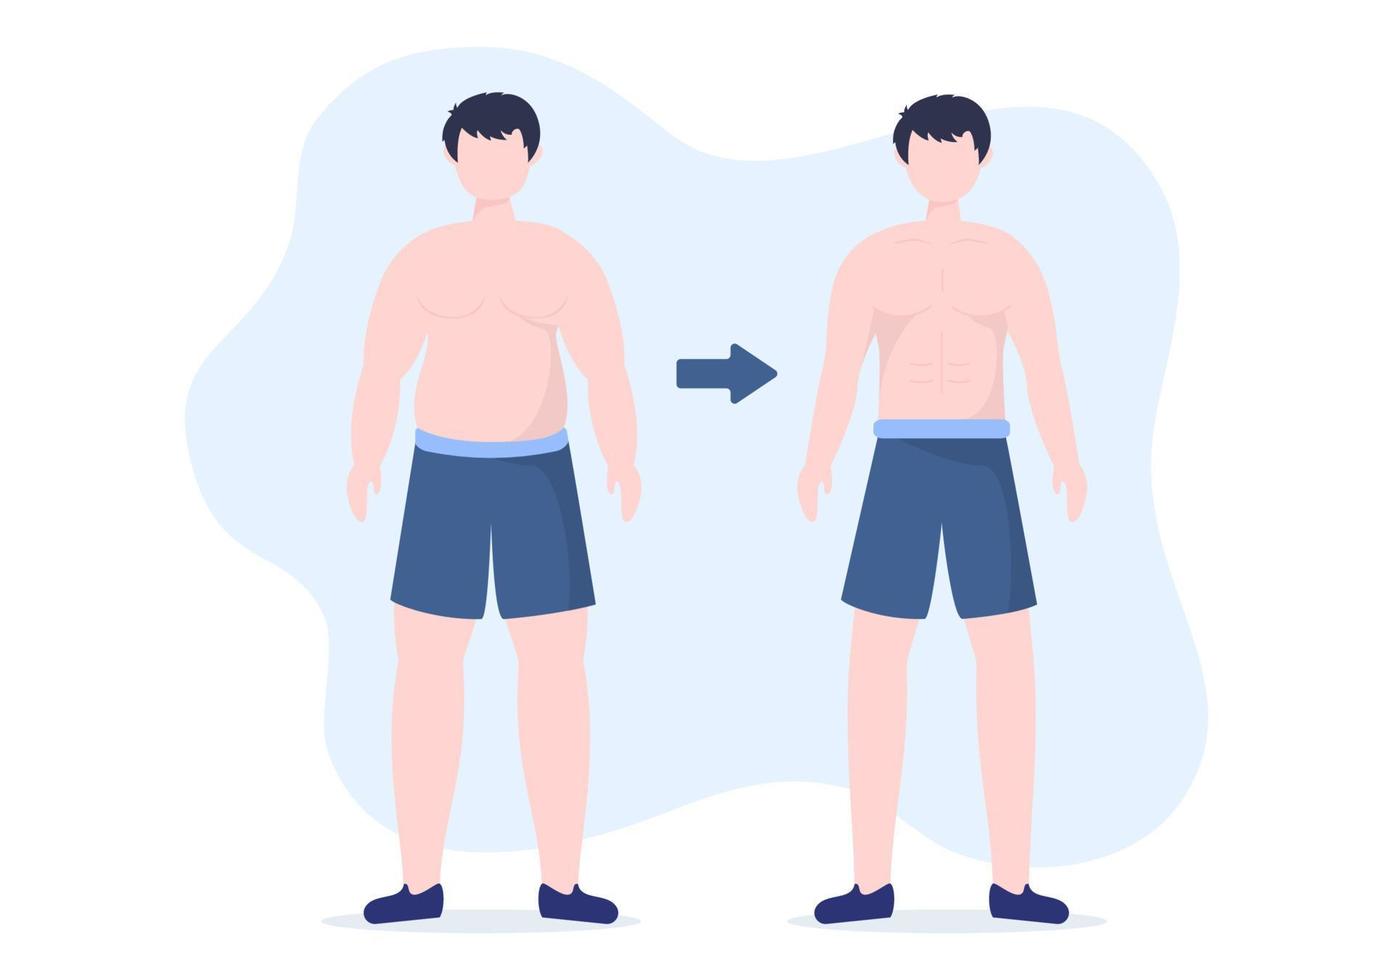 plantilla de pérdida de peso ilustración plana de dibujos animados dibujados a mano de personas con sobrepeso haciendo ejercicio, entrenando y planificando una dieta para un cuerpo delgado vector